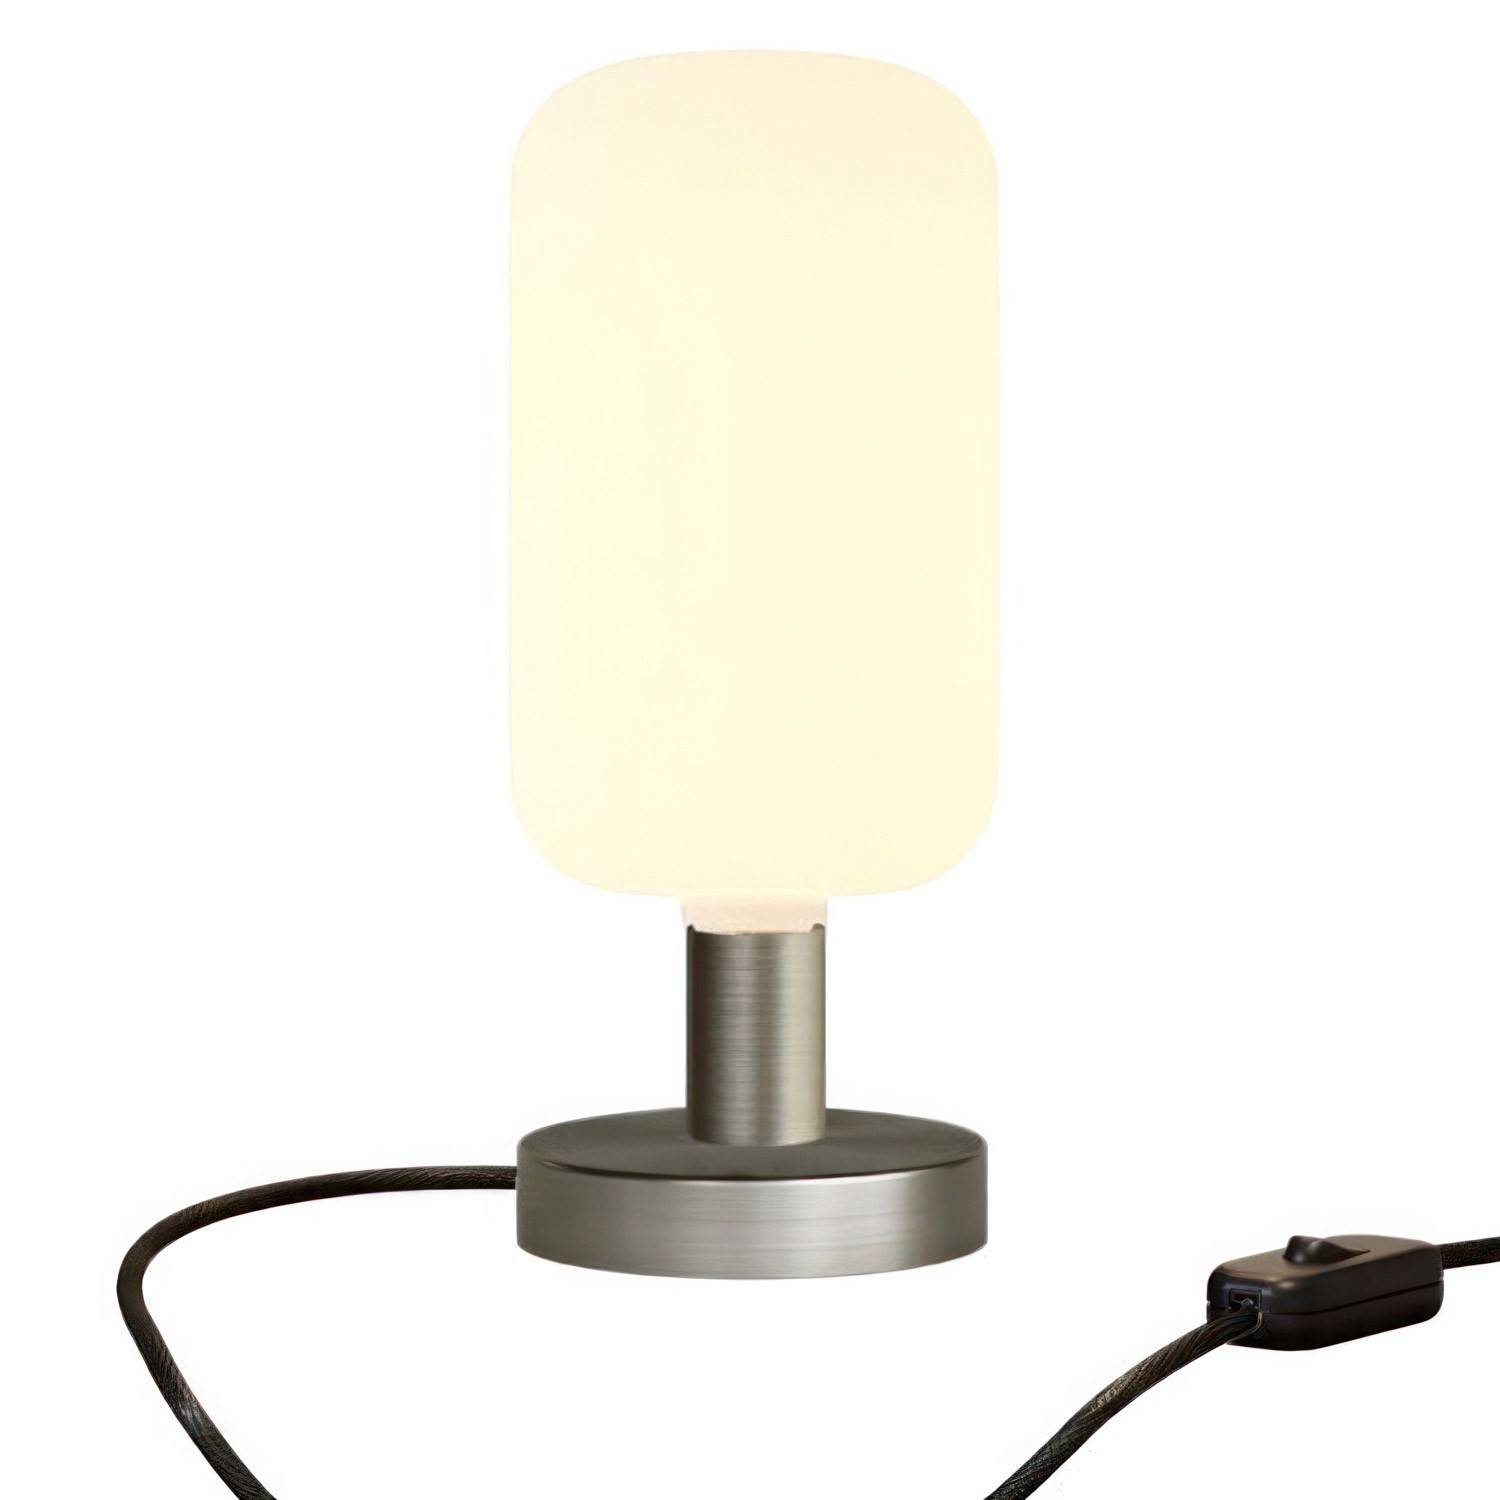 Metalowa lampa  stołowa Lampa Posaluce Candy z dwubiegunową wtyczką